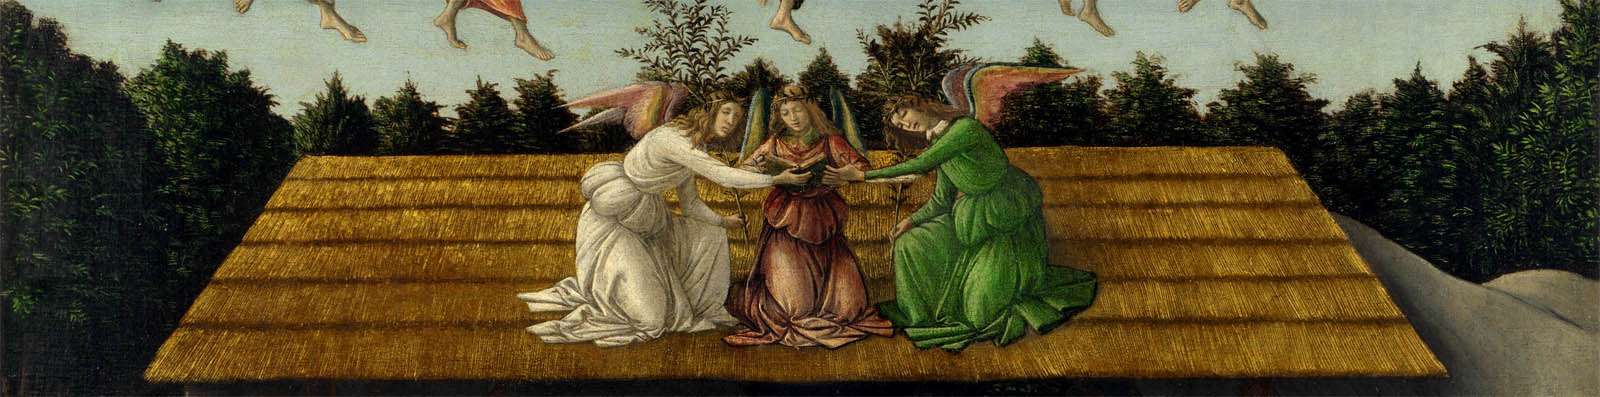 Sandro+Botticelli-1445-1510 (117).jpg